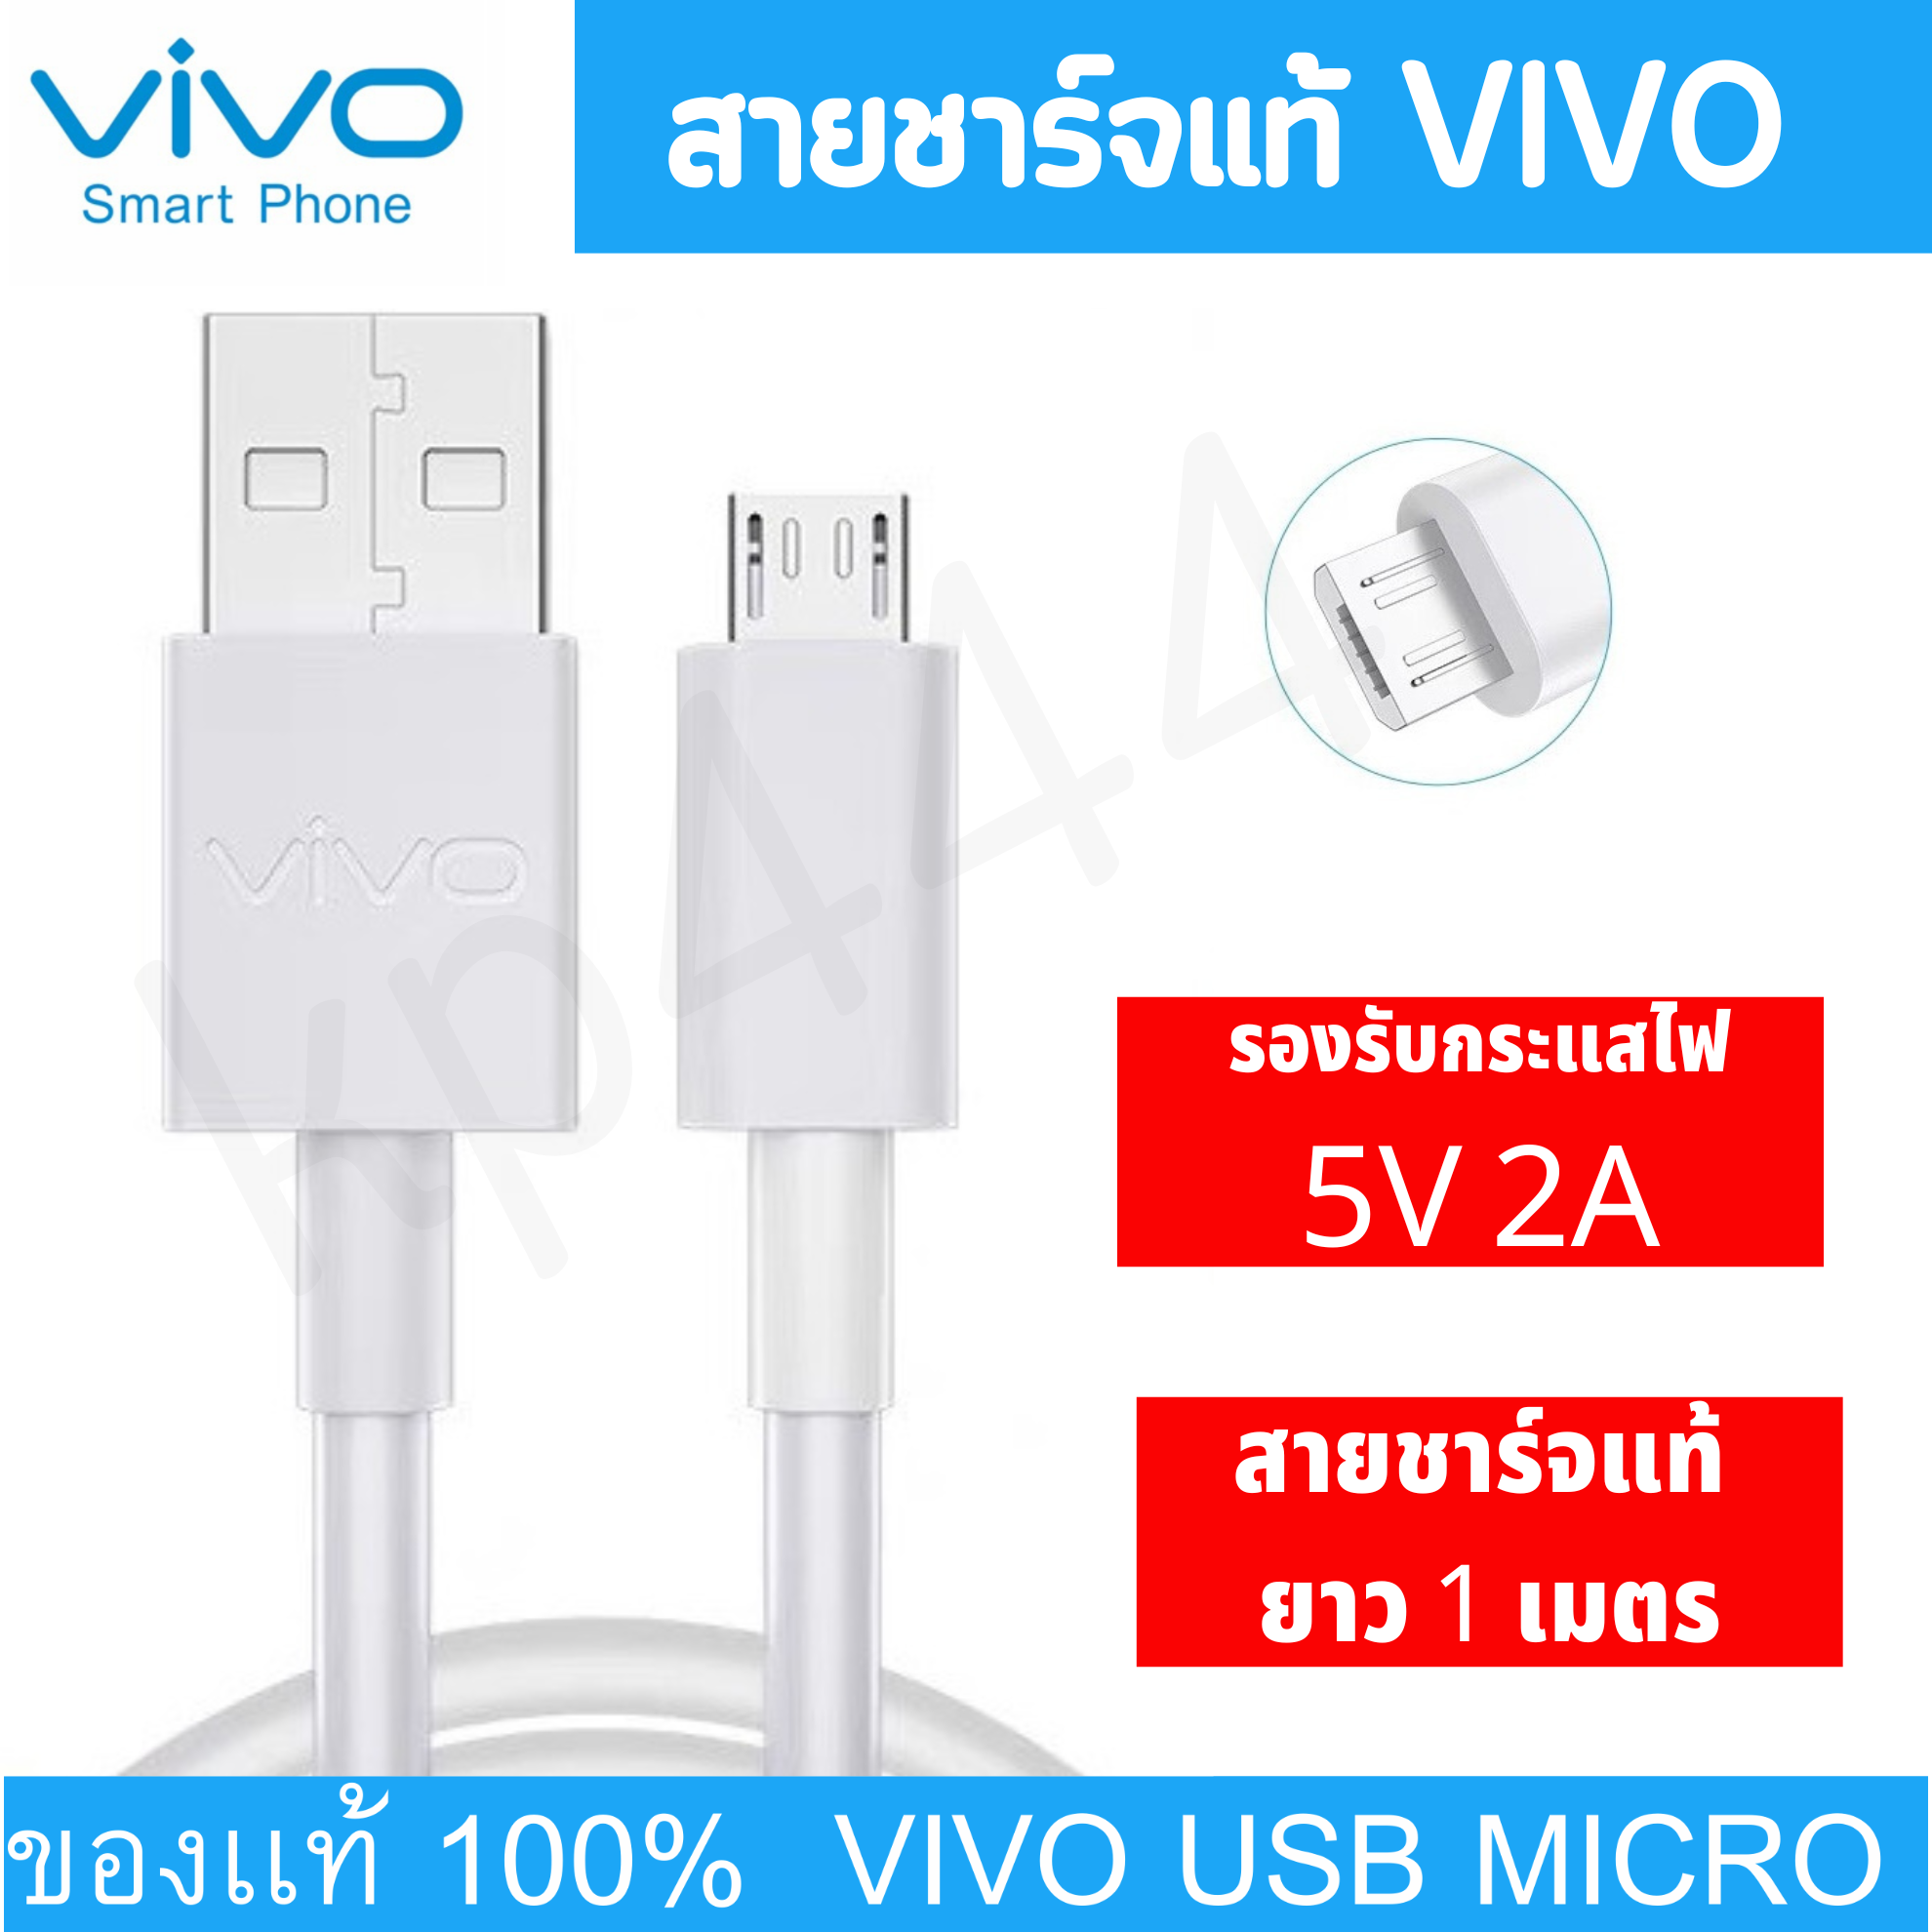 สายชาร์จแท้ VIVO USB MICRO  สายยาว1เมตร รองรับกระแสไฟ 5V 2A รองรับหลายรุ่น เช่น   V11 Y11 Y17 Y19 Y20 V11 V5 V15 PRO